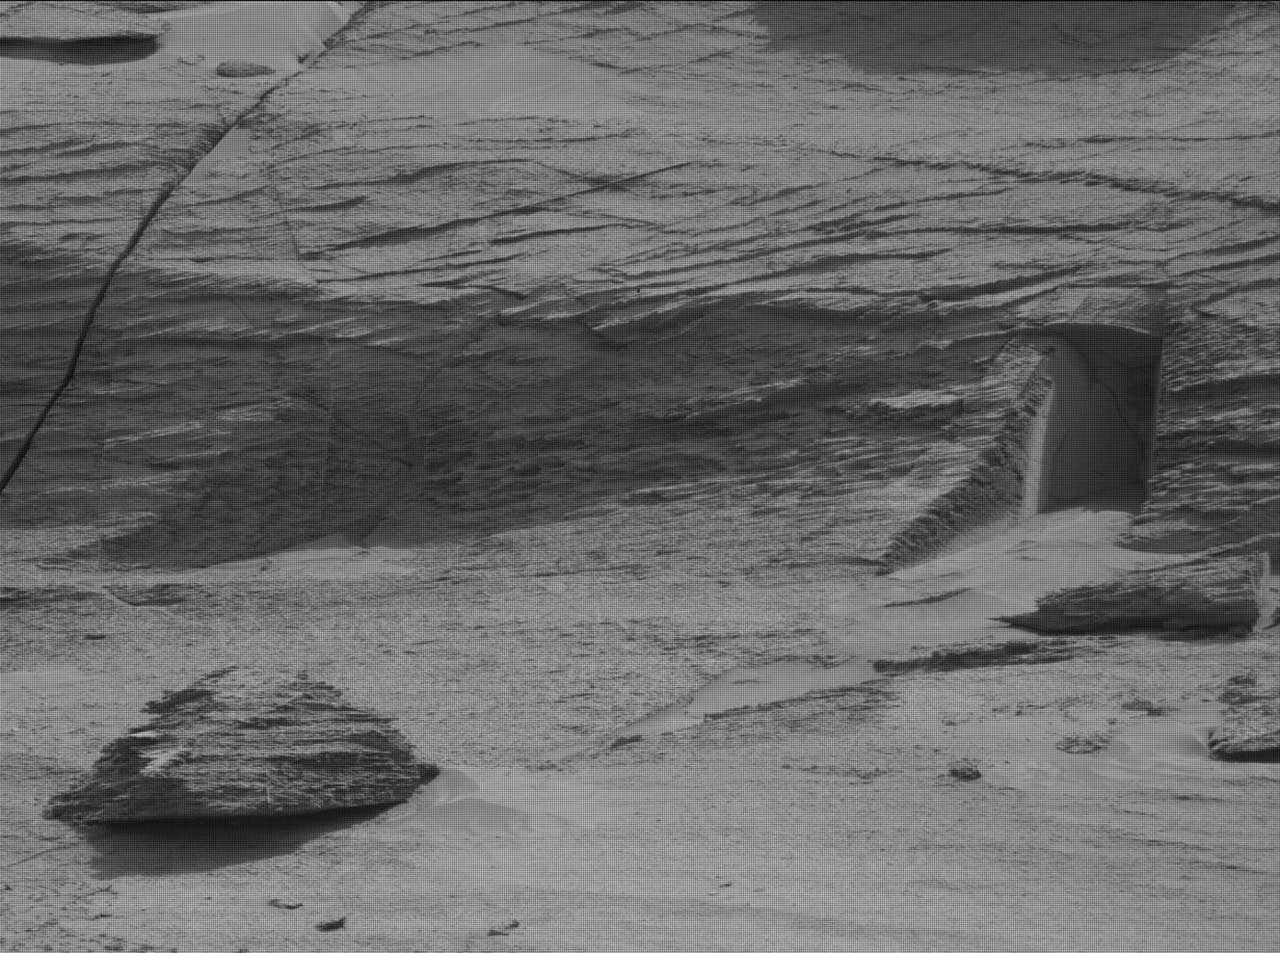 وكأنه "بوابة إلى عالم آخر".. هيكل غامض على المريخ يثير اهتمام العلماء